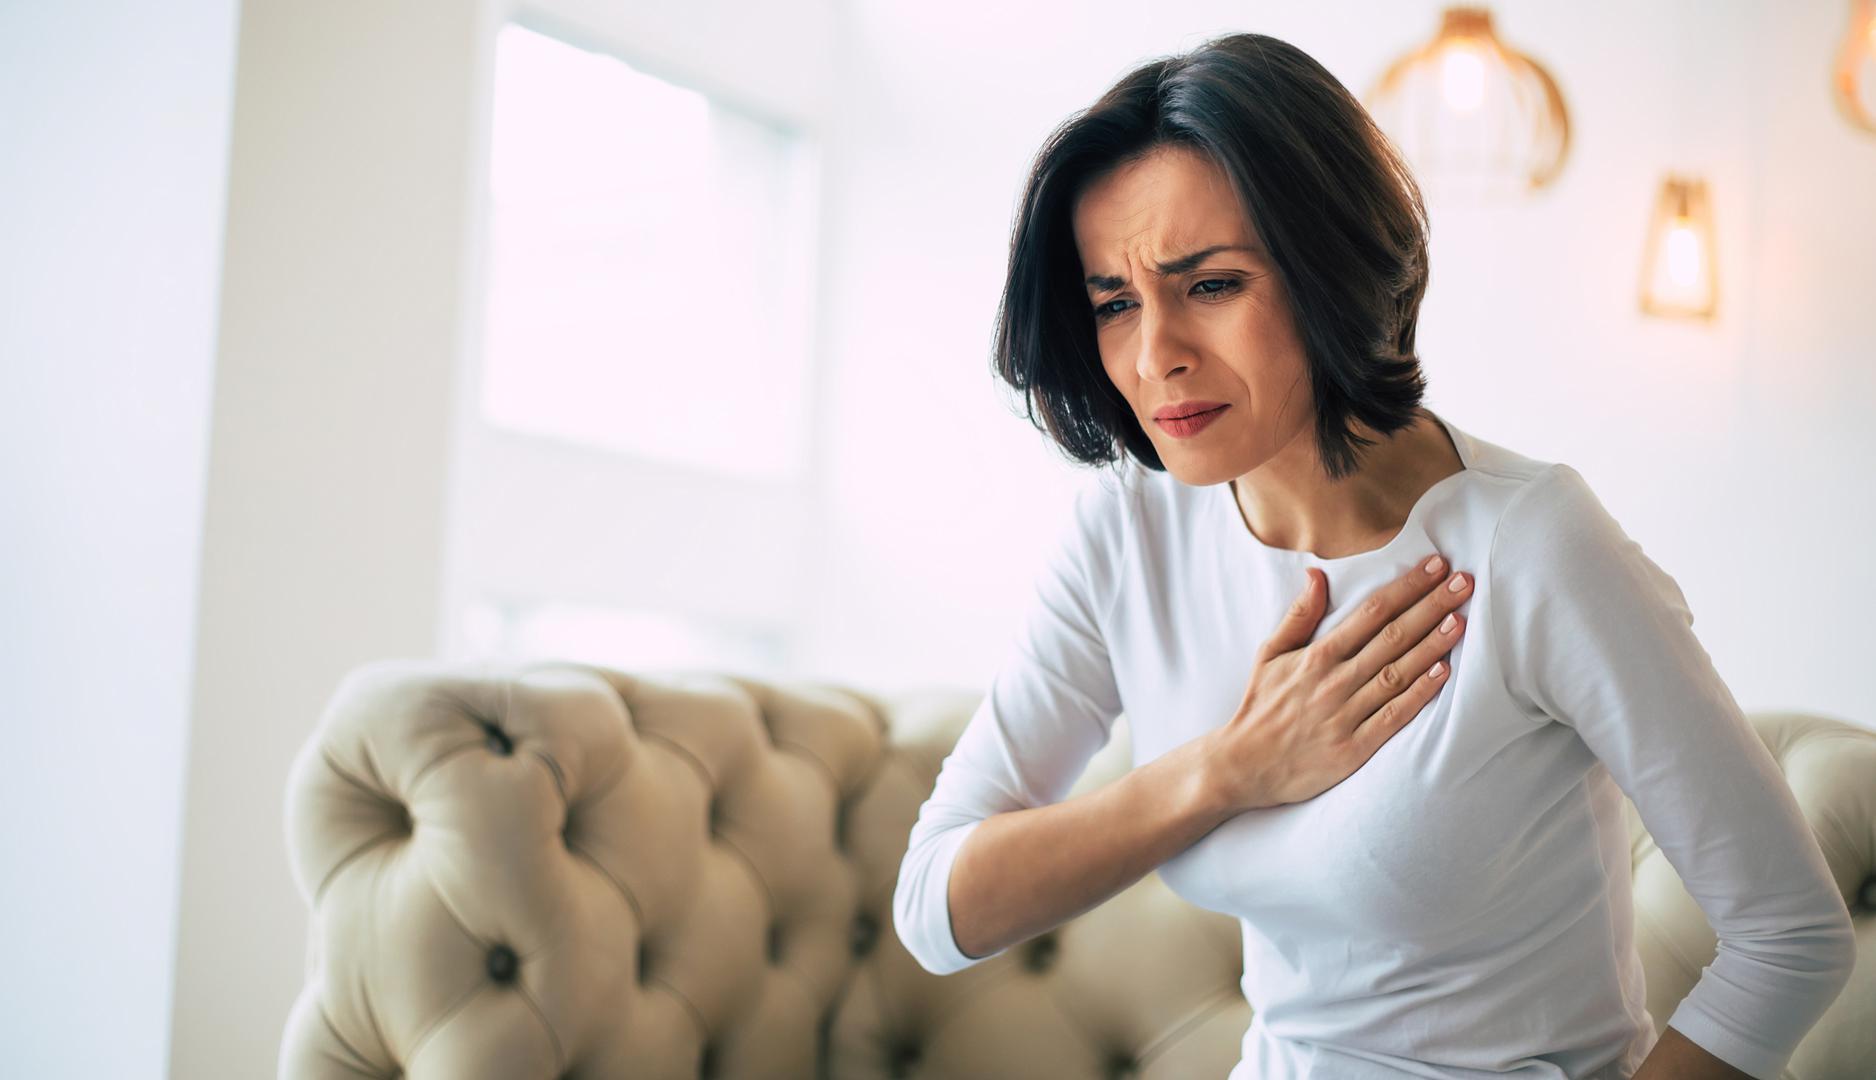 3. Prepoznajte simptome srčanog udara kod žena: Lako je pretpostaviti da biste znali da imate srčani udar. No, dok je najčešći simptom srčanog udara nelagoda u prsima, zapravo ga možete imati bez osjećaja boli ili pritiska u tom području. Osim toga, 'žene imaju veću vjerojatnost da će imati druge simptome nego muškarci', prema FDA. Simptomi srčanog udara kod žena mogu uključivati ​​bol ili osjećaj stezanja u prsima, ruci, vratu, čeljusti, leđima ili abdomenu, otežano disanje, mučnina ili povraćanje, lakomislenost, ekstremni umor i hladan znoj. 'Ako imate ove simptome i sumnjate da imate srčani udar, nazovite hitnu pomoć', rekli su, 'Nazovite čak i ako nisi sigurni, to bi vam moglo spasiti život'.